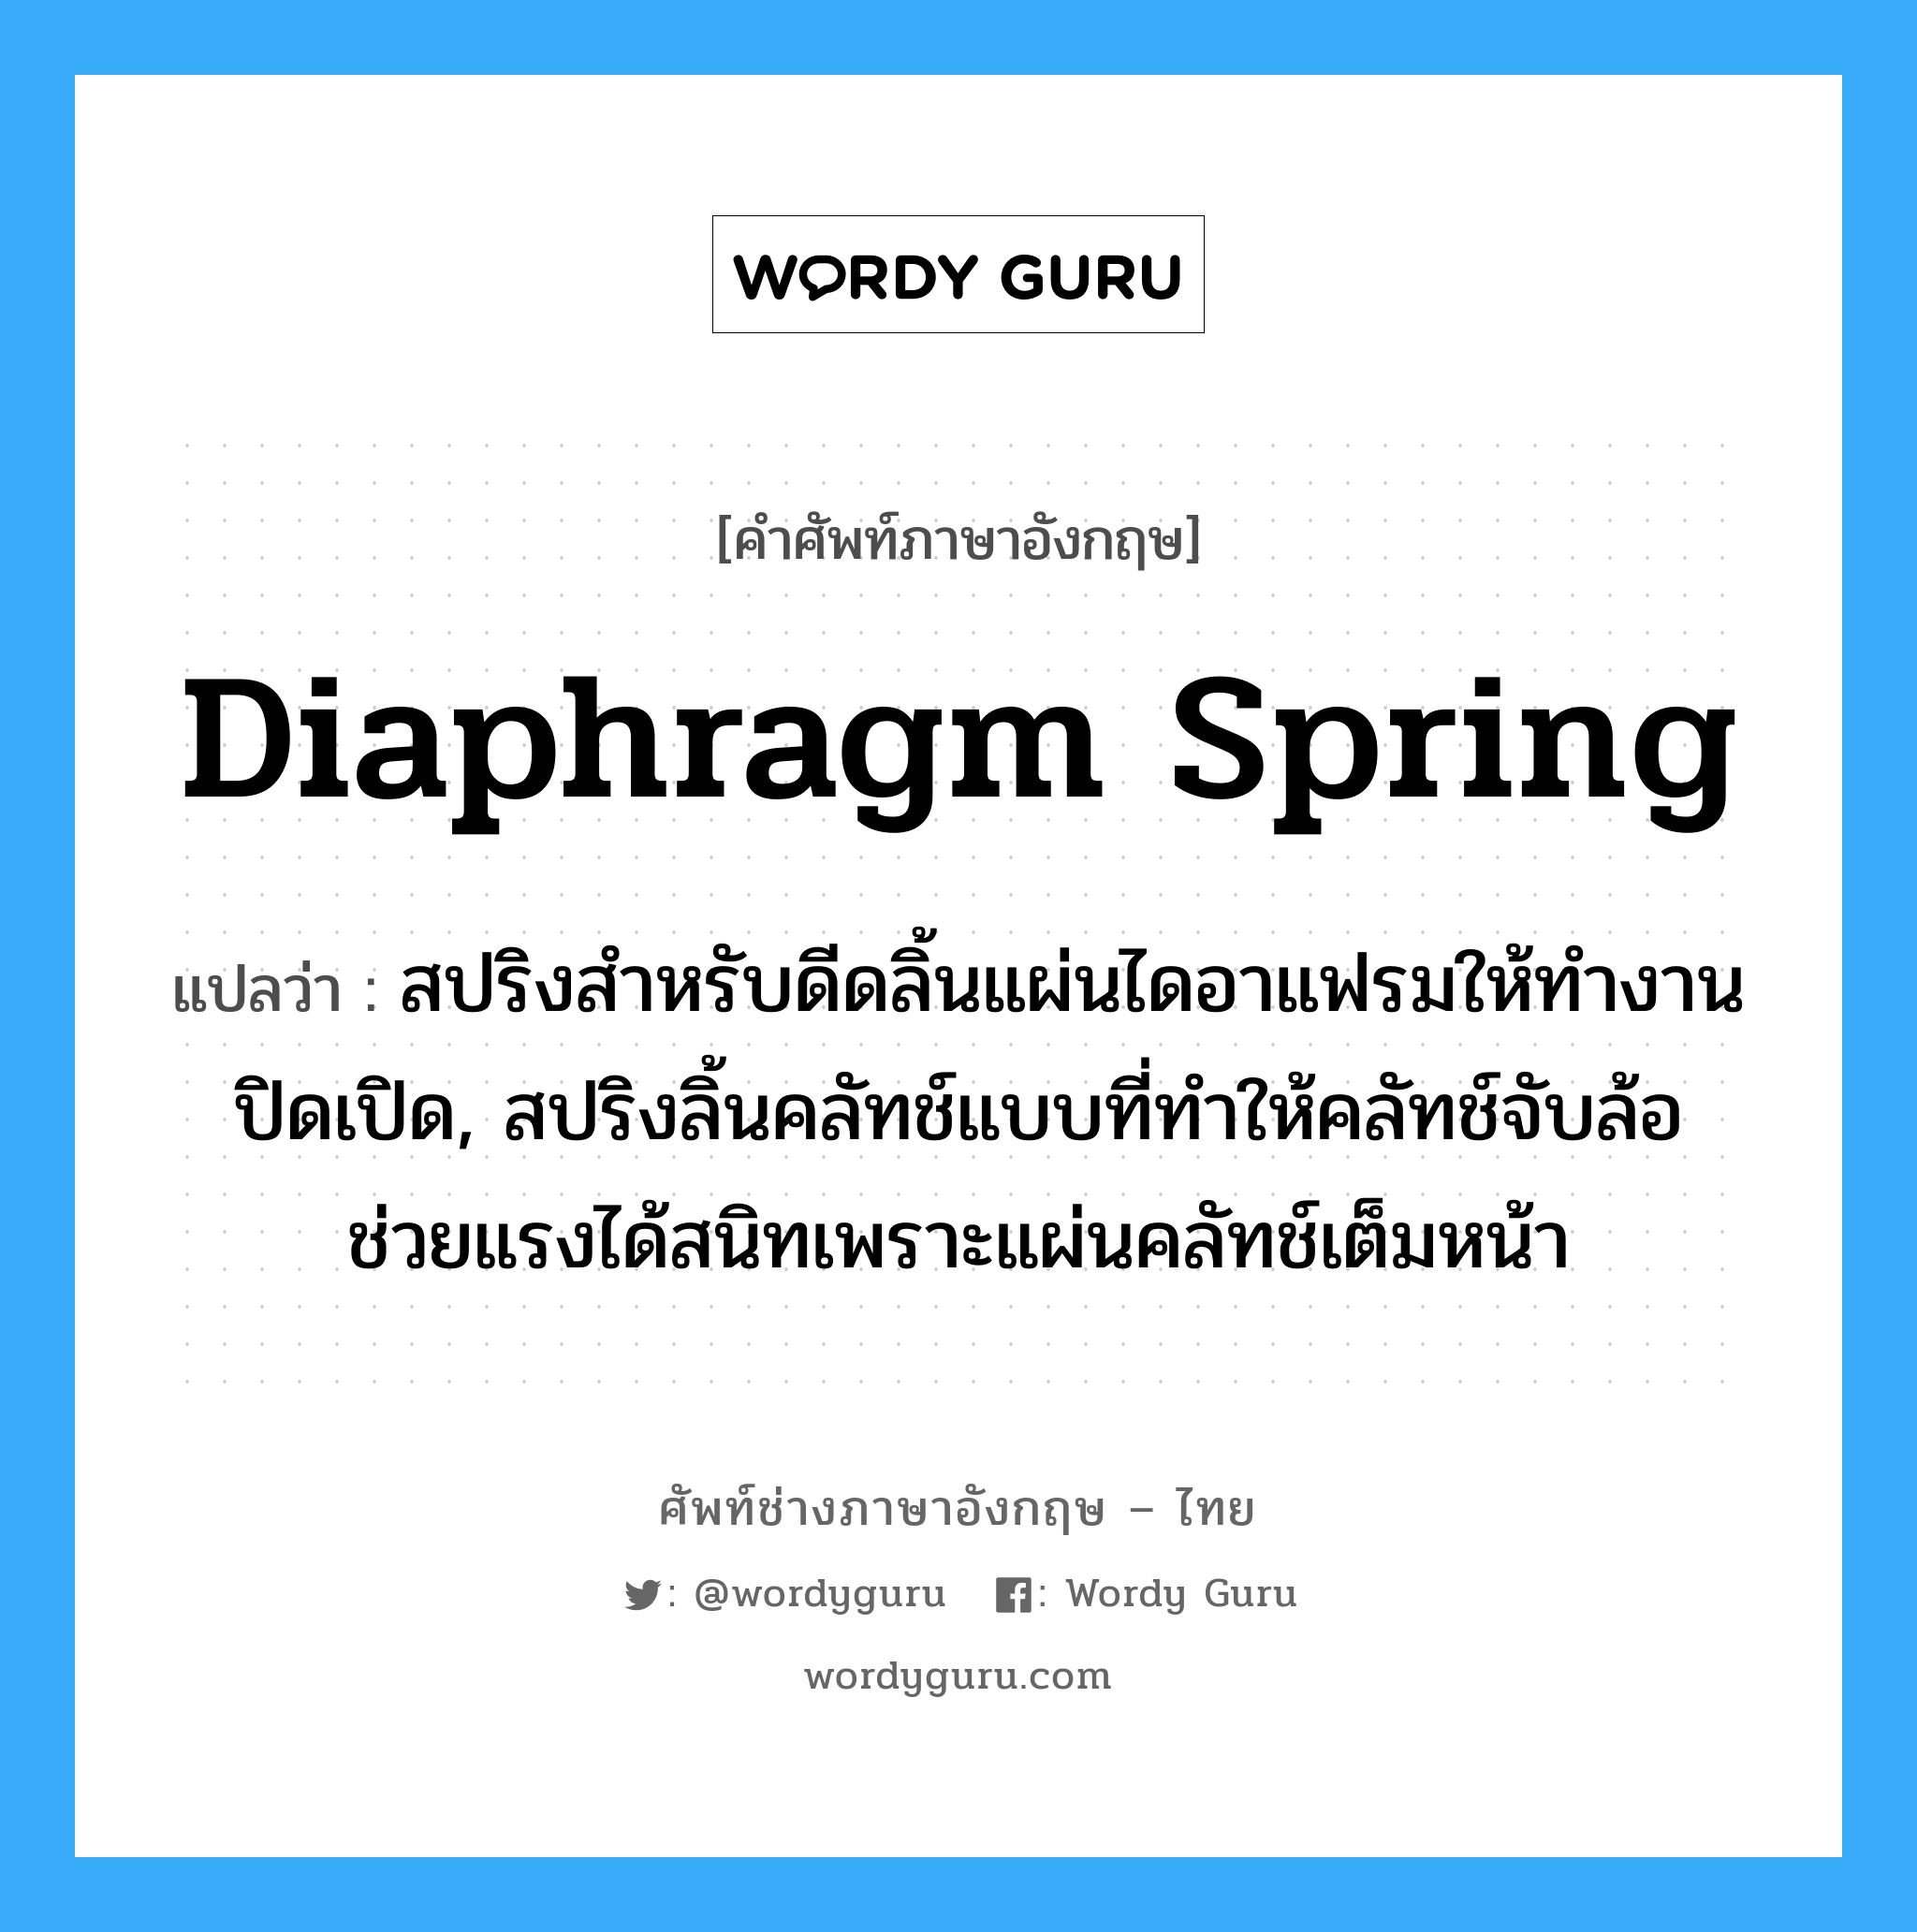 diaphragm spring แปลว่า?, คำศัพท์ช่างภาษาอังกฤษ - ไทย diaphragm spring คำศัพท์ภาษาอังกฤษ diaphragm spring แปลว่า สปริงสำหรับดีดลิ้นแผ่นไดอาแฟรมให้ทำงานปิดเปิด, สปริงลิ้นคลัทช์แบบที่ทำให้คลัทช์จับล้อ ช่วยแรงได้สนิทเพราะแผ่นคลัทช์เต็มหน้า